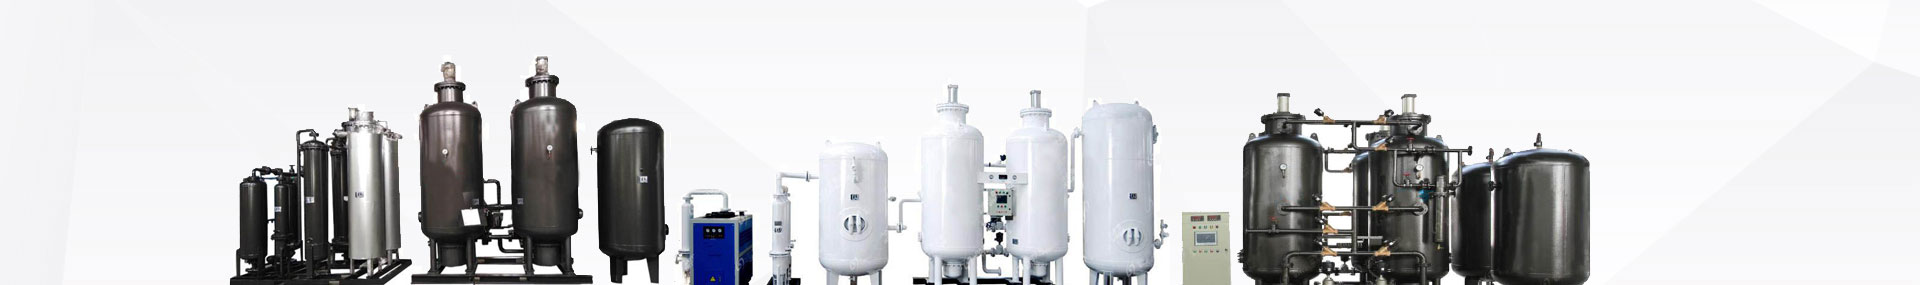 制氮机,工业制氮机,变压吸附制氮机,氮气纯化装置,制氮设备